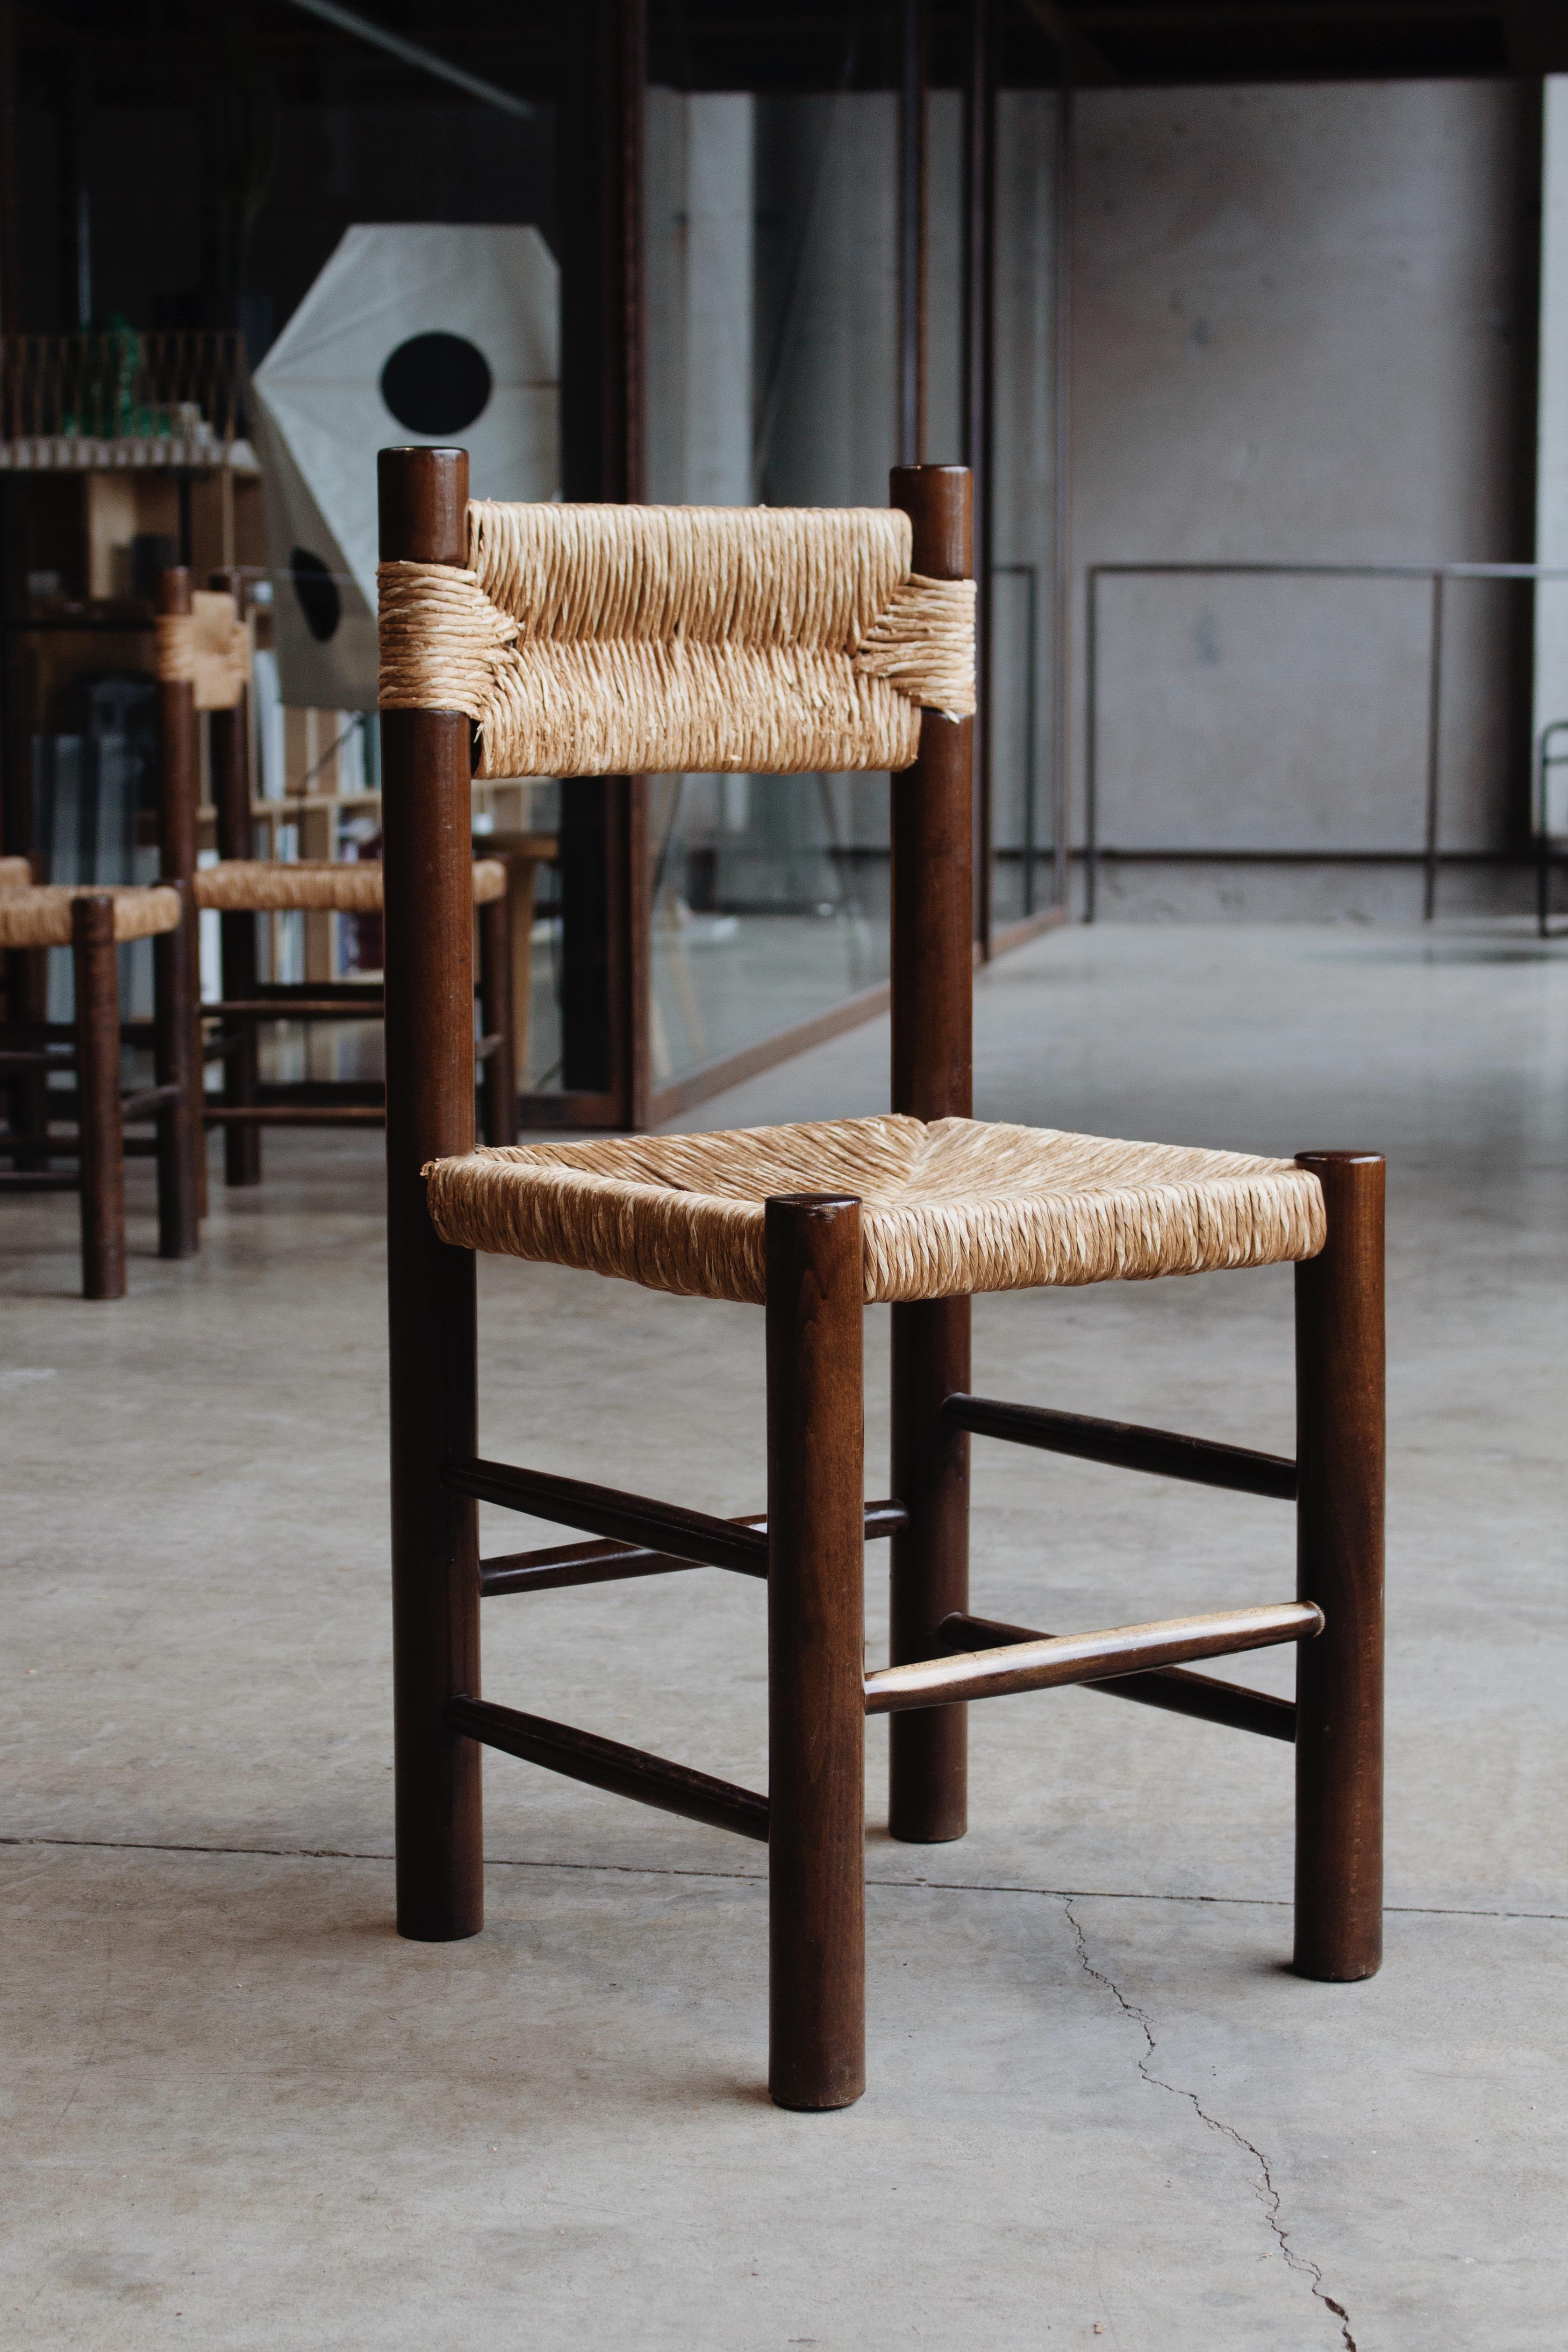 Charlotte Perriand Esszimmerstühle für Robert Sentou, Stroh und Holz, Frankreich, 1964, Zehnersatz. 

Die Stühle haben ein schlichtes und zeitloses Design. Die ausgefallene Rückenlehne und der Sitz aus Stroh bilden zusammen mit der Struktur aus